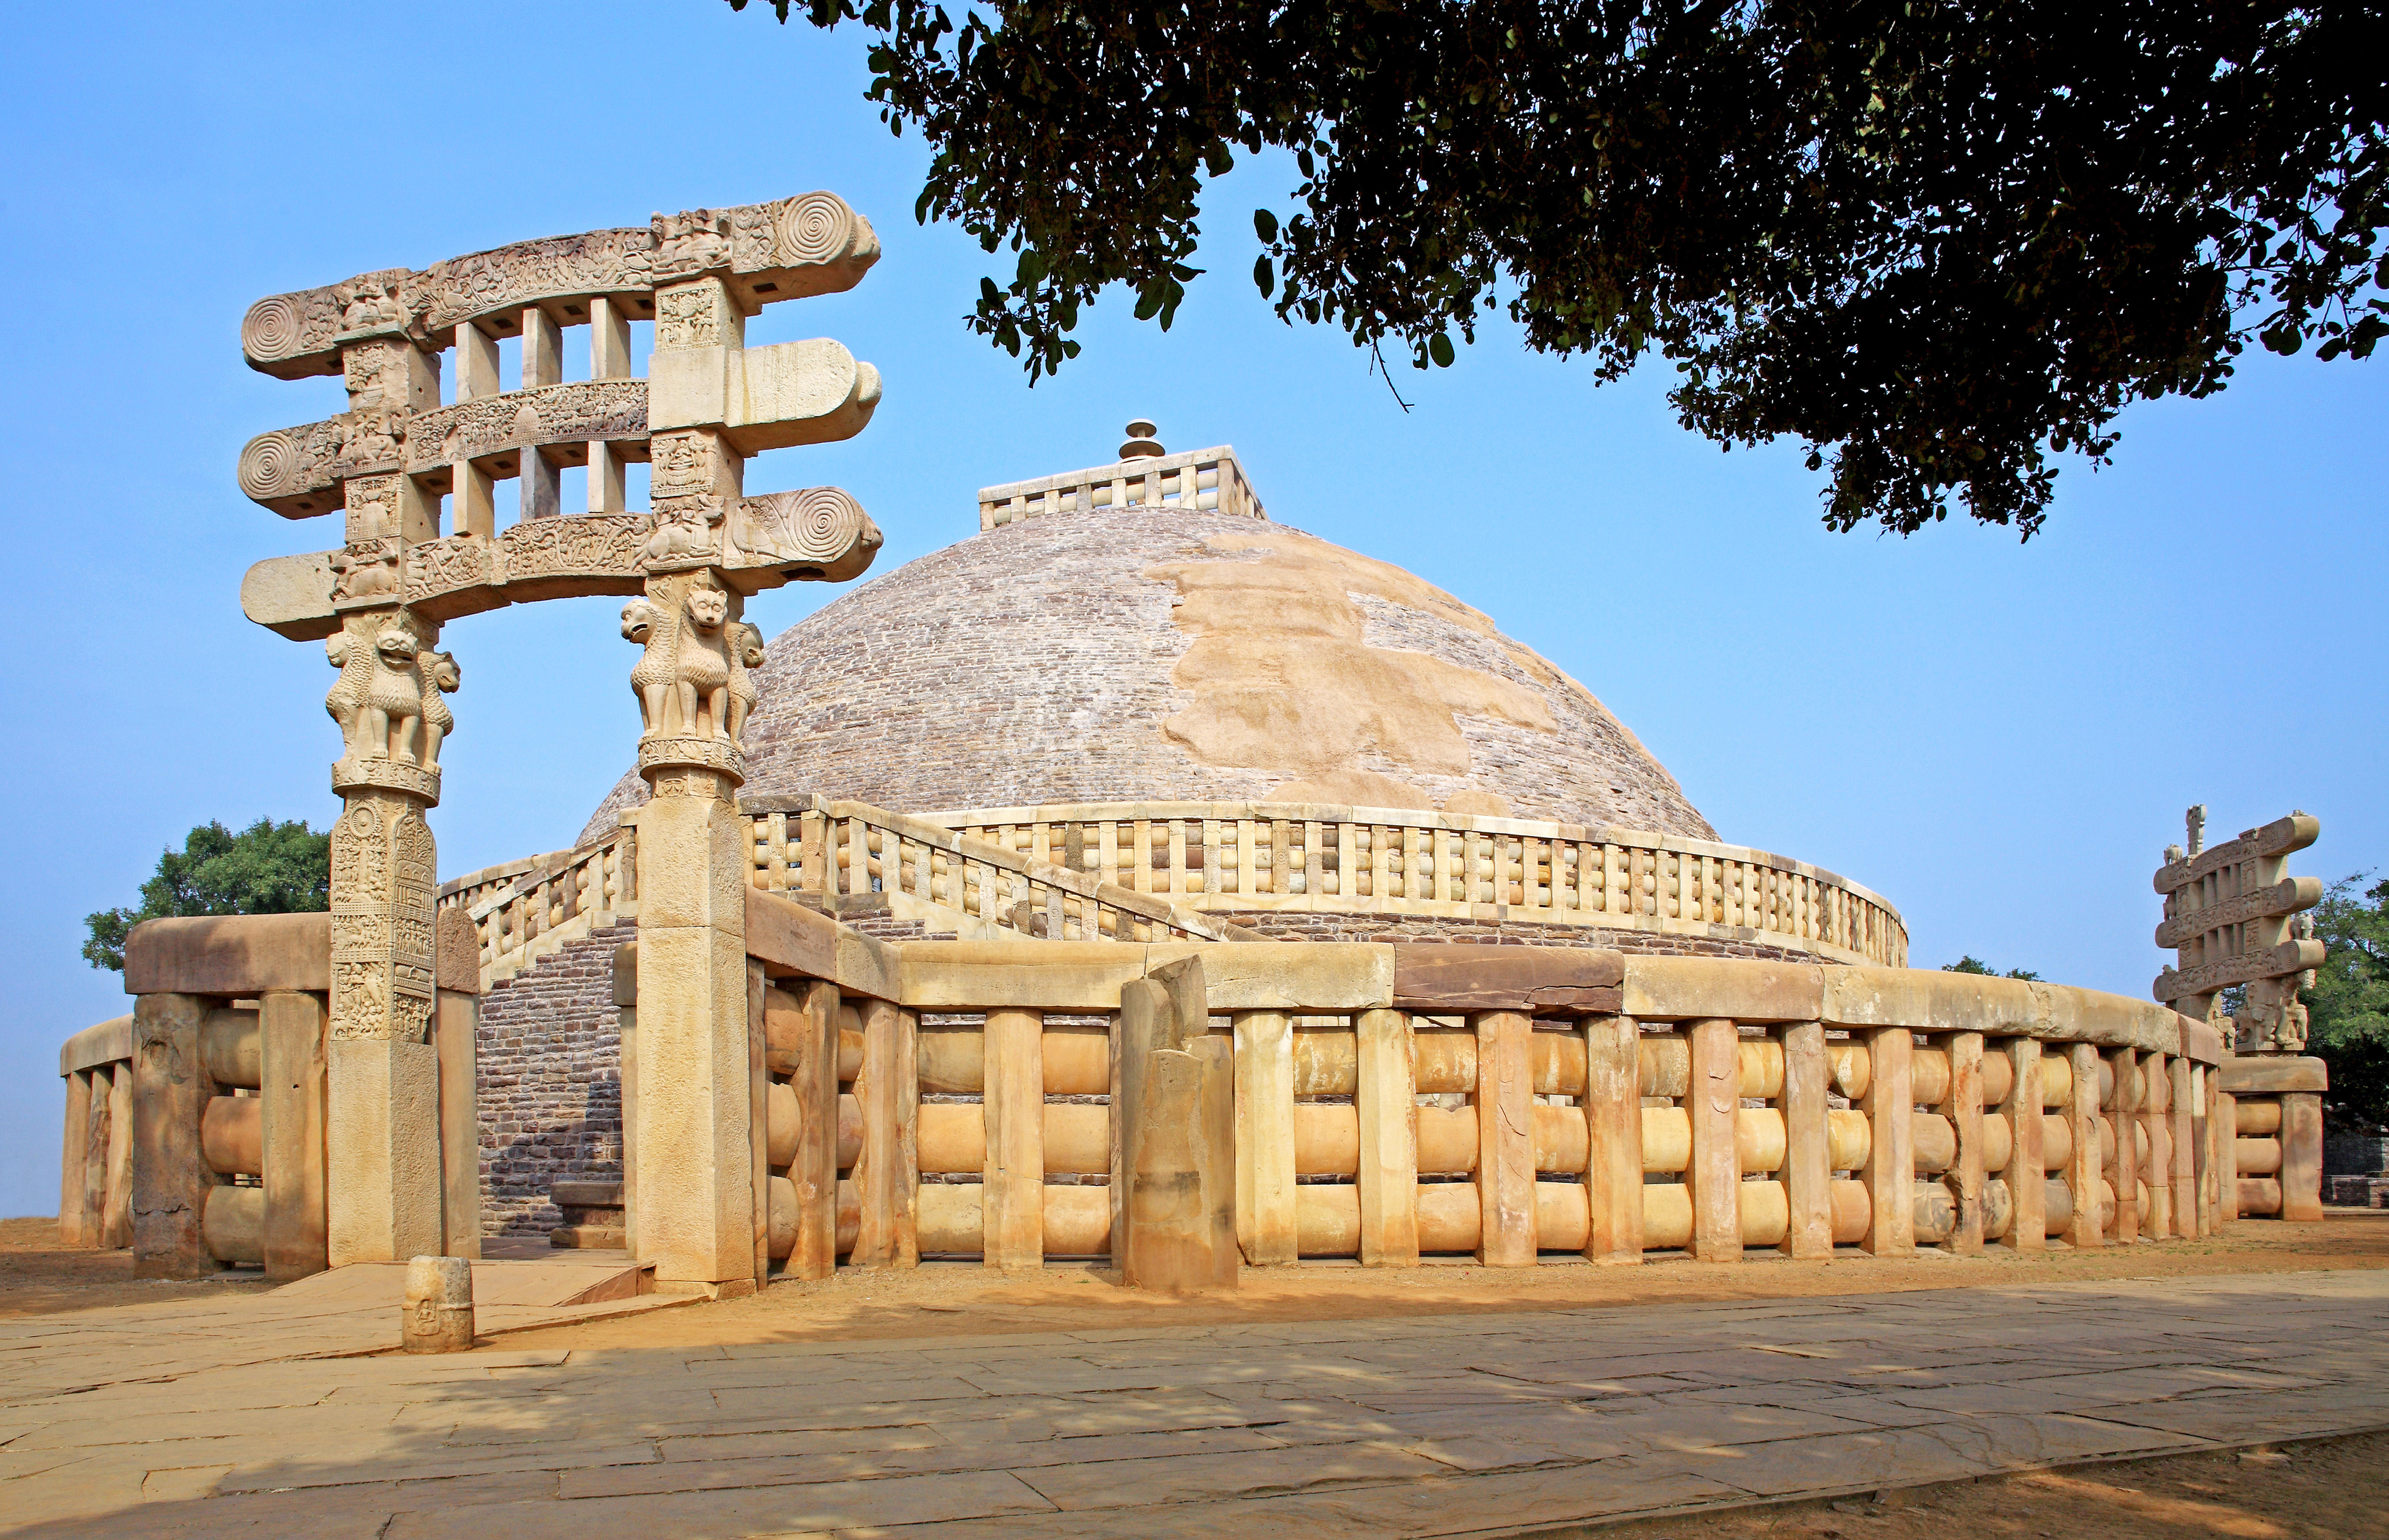 Sanchi Stupa/ Great Stupa of Sanchi